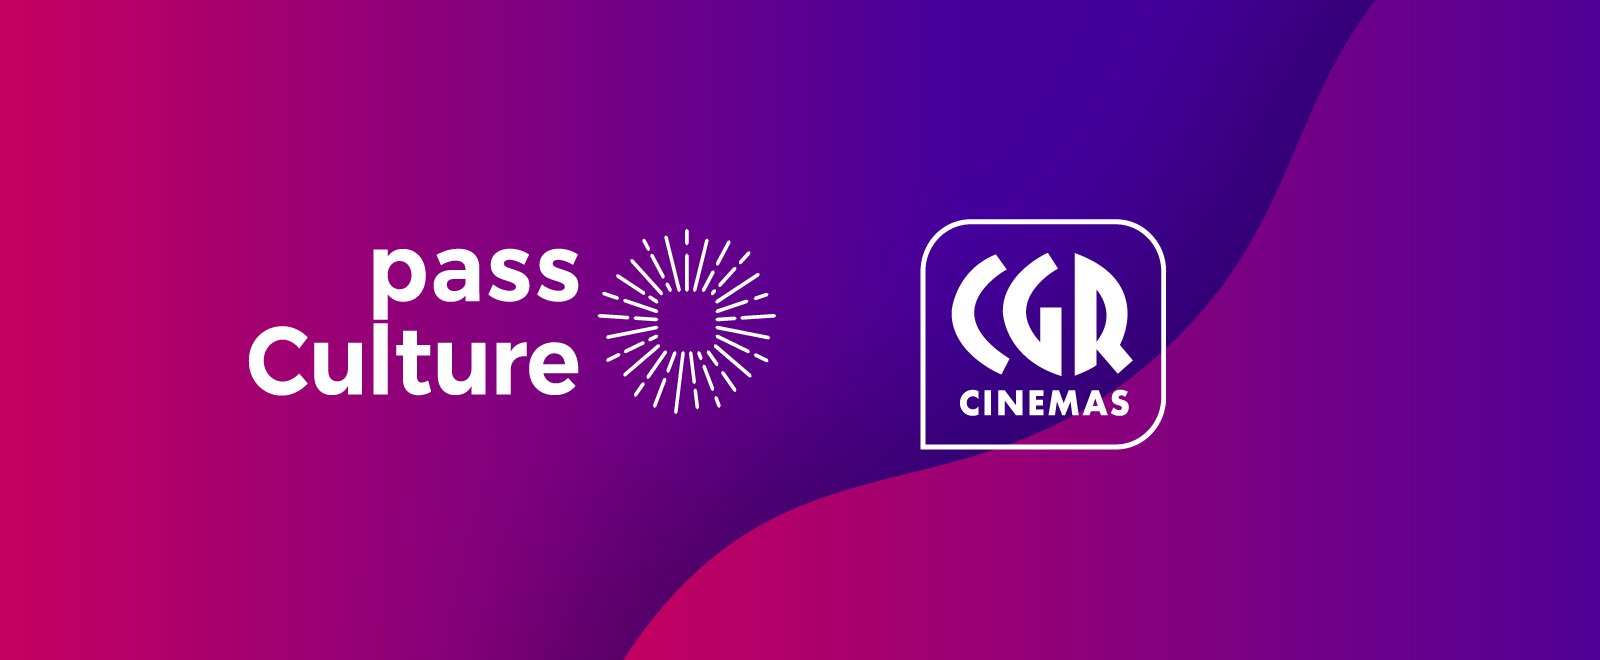 Pass Culture et CGR cinémas